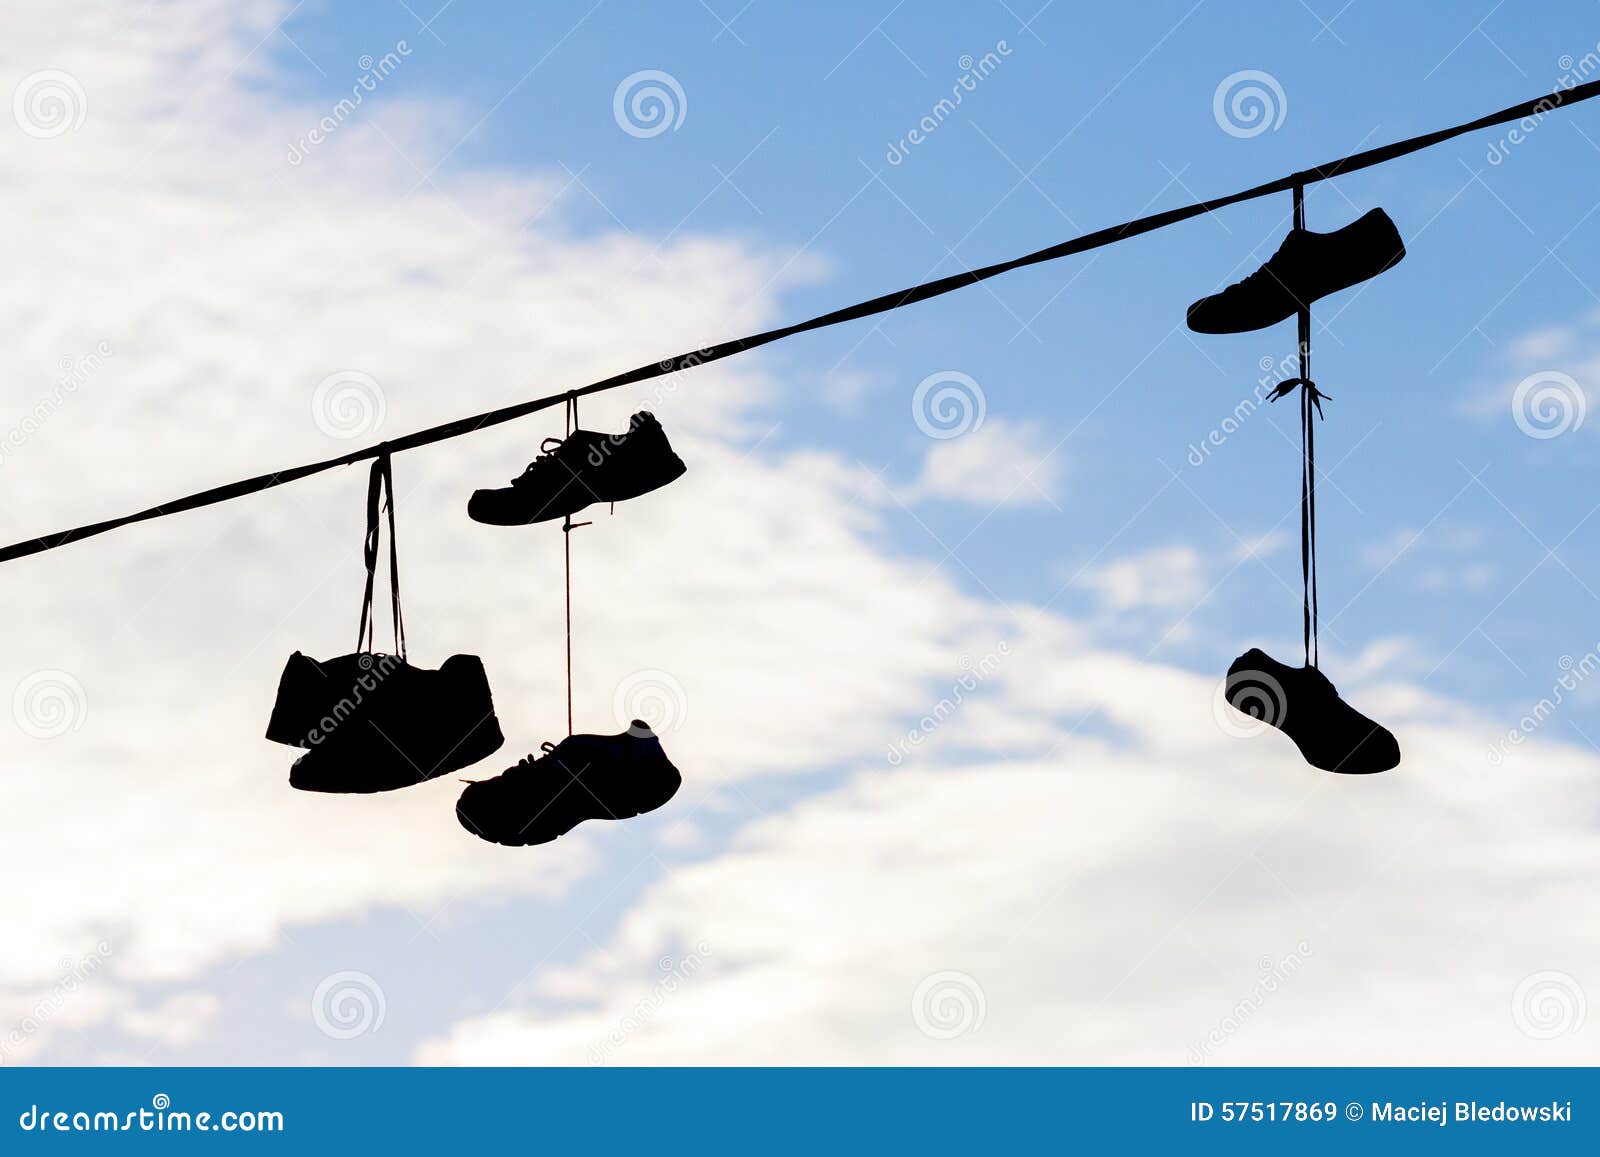 Висеть или весеть. Ботинки висят на проводах. Повешенный ботинок на провод. Обувь висит на проводах. Кроссовки висят на проводах.